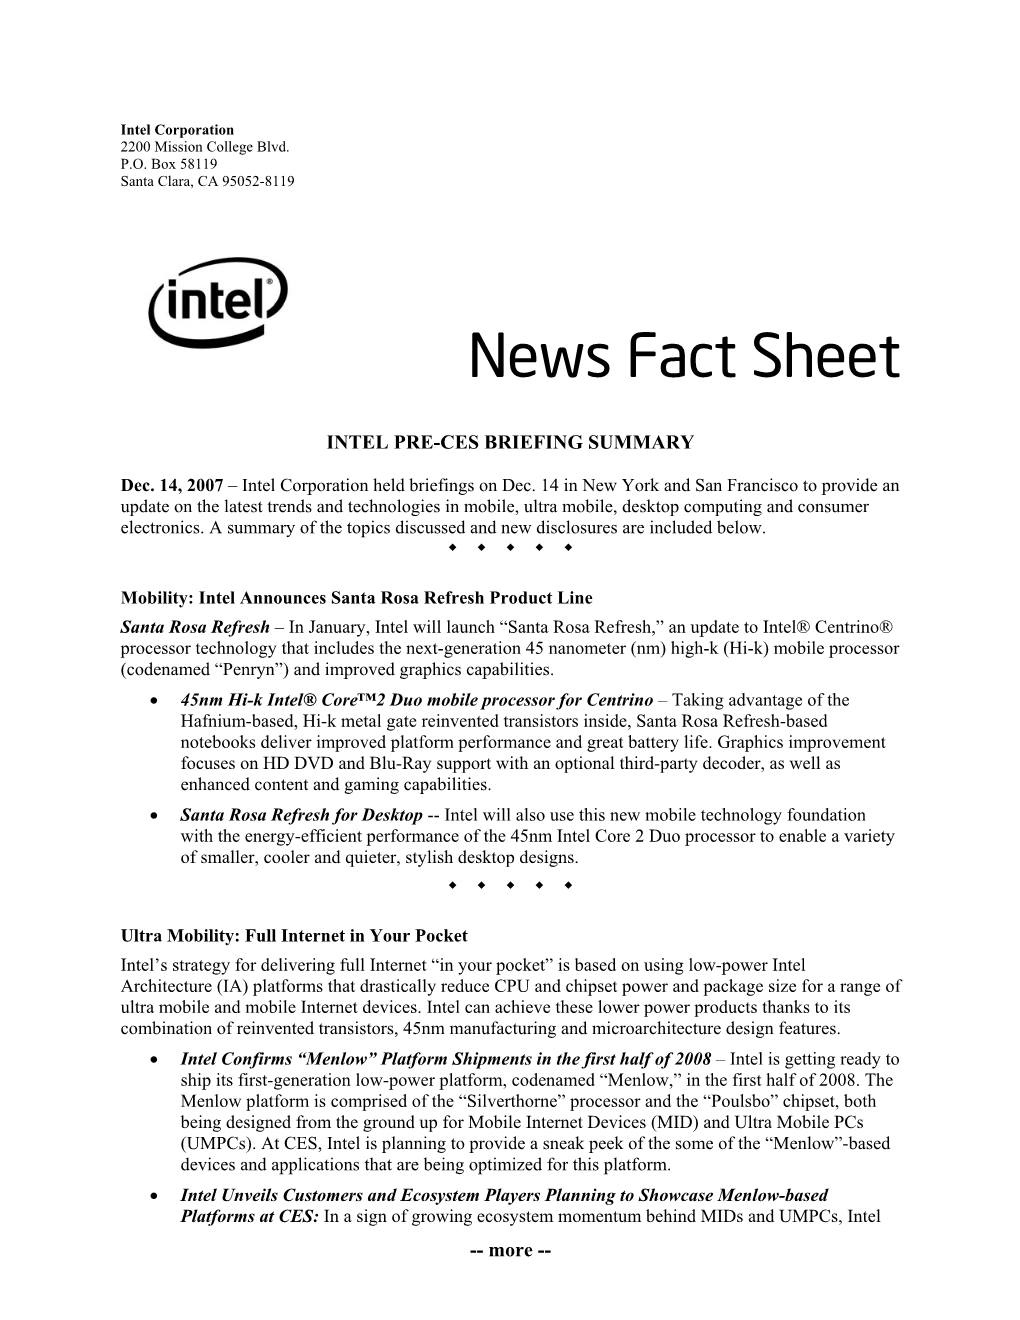 Intel Pre-Ces Briefing Summary